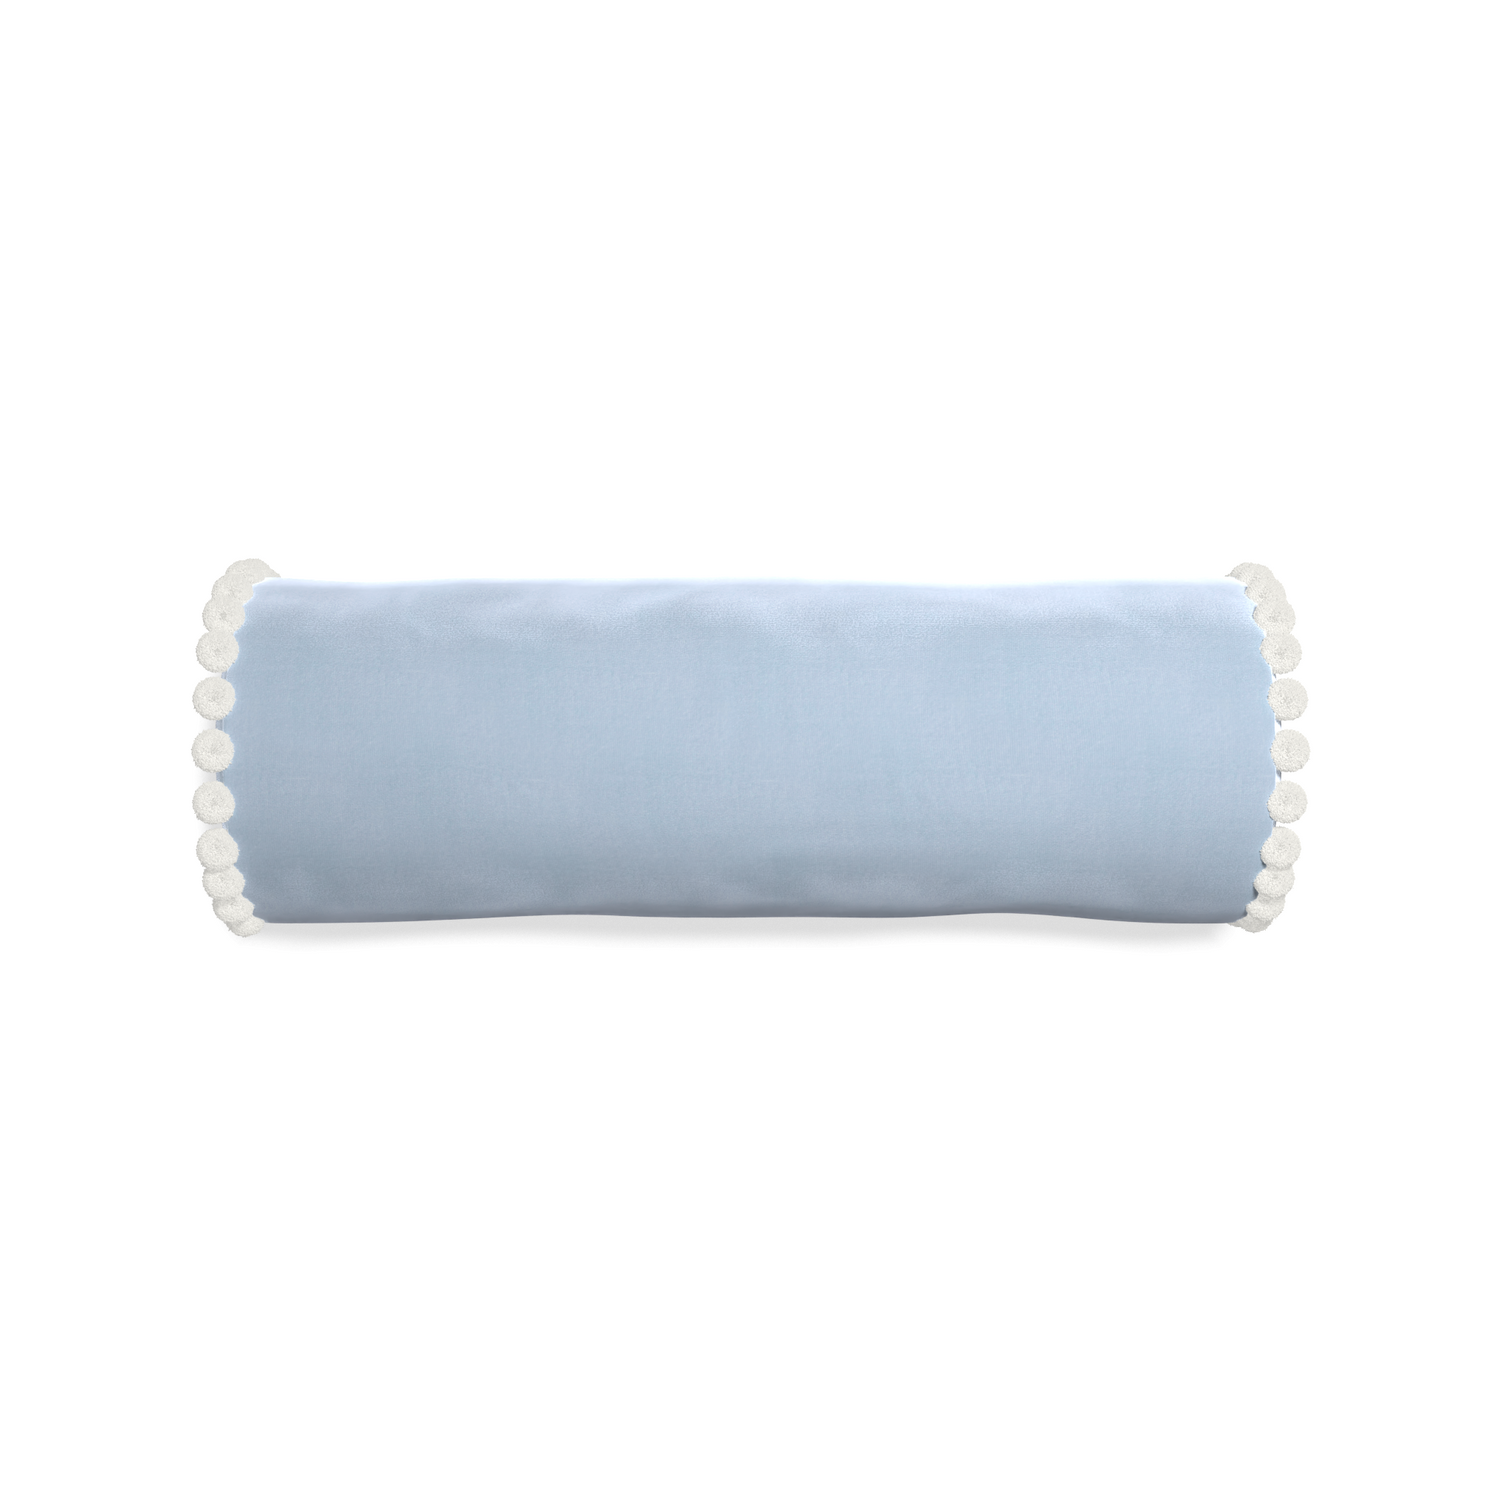 bolster light blue velvet pillow with white pom pom 